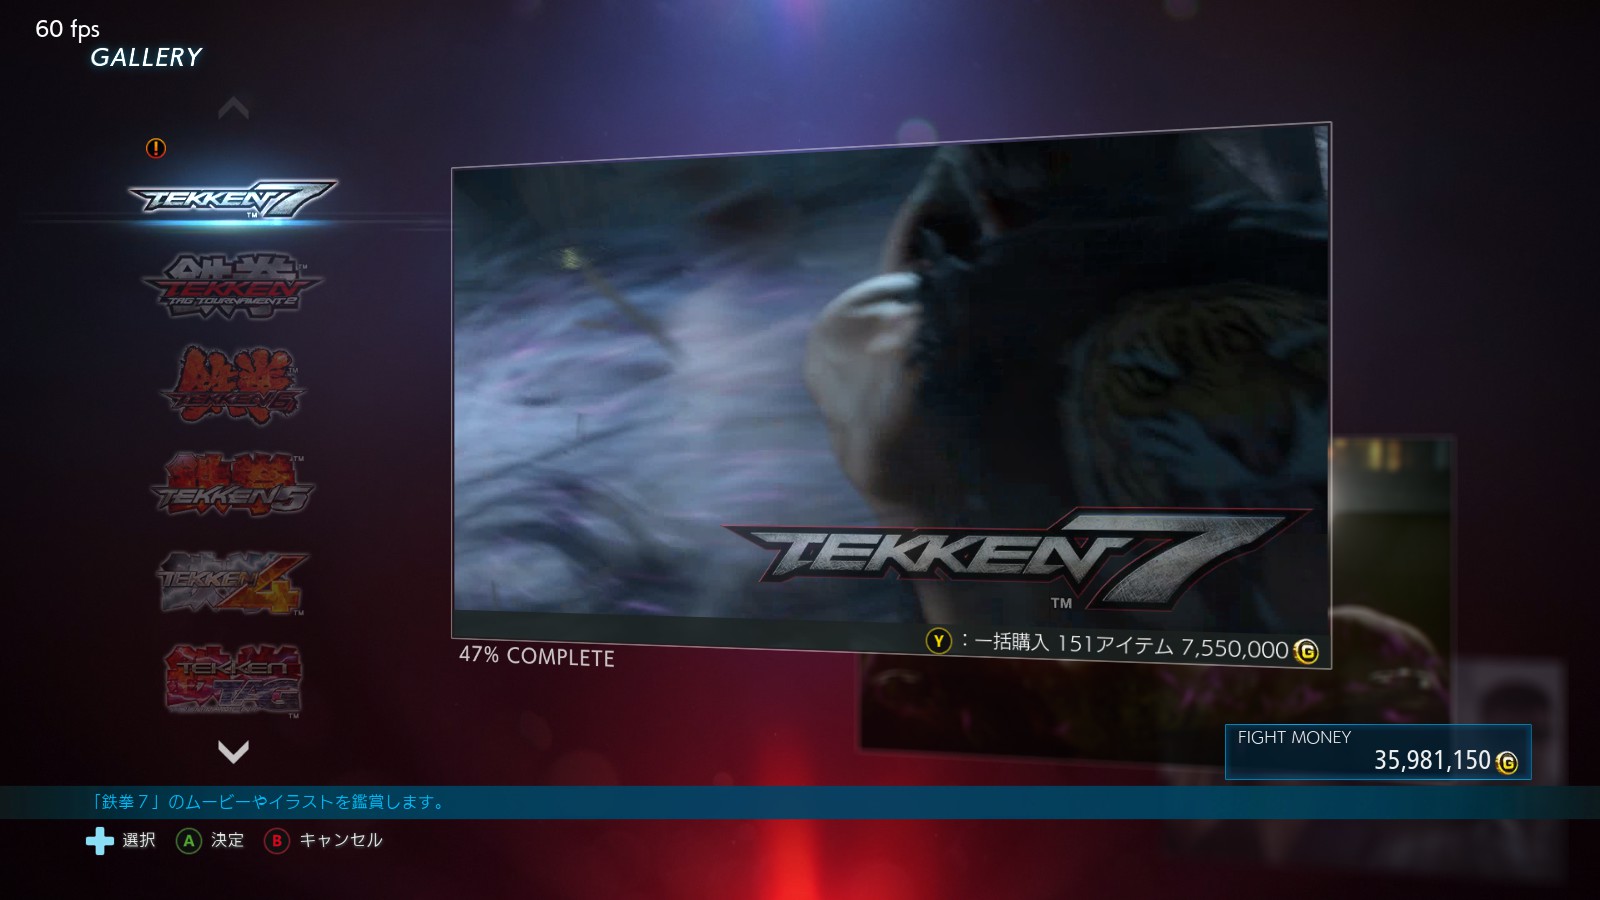 TEKKEN 7 - Tekken 7 offline turbo button usage